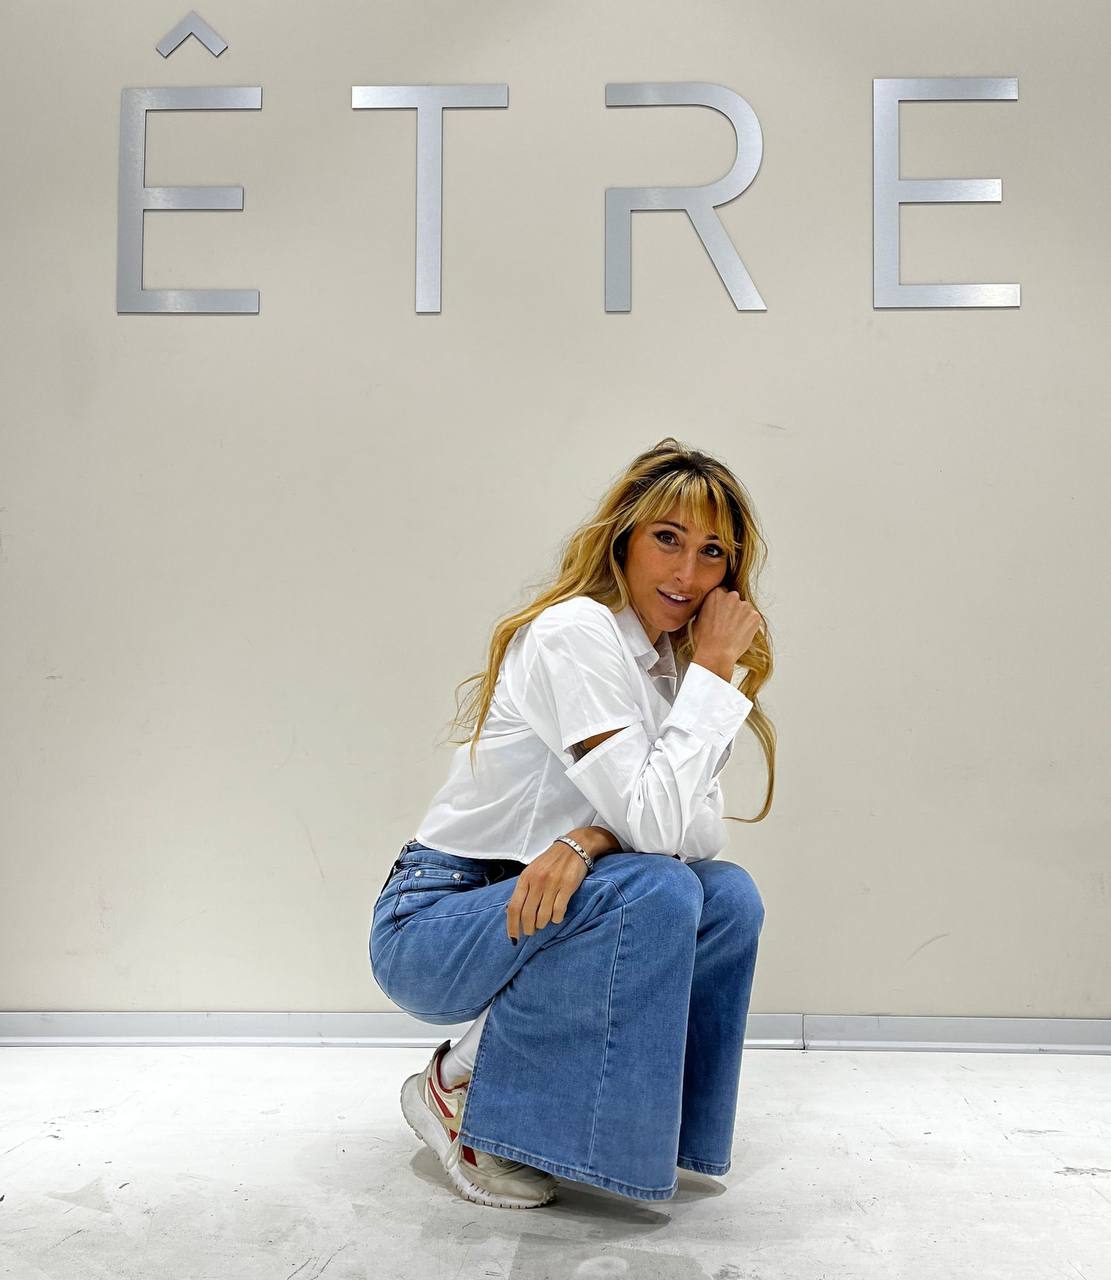 Итальянская одежда, бренд ETRE, арт. 73226096